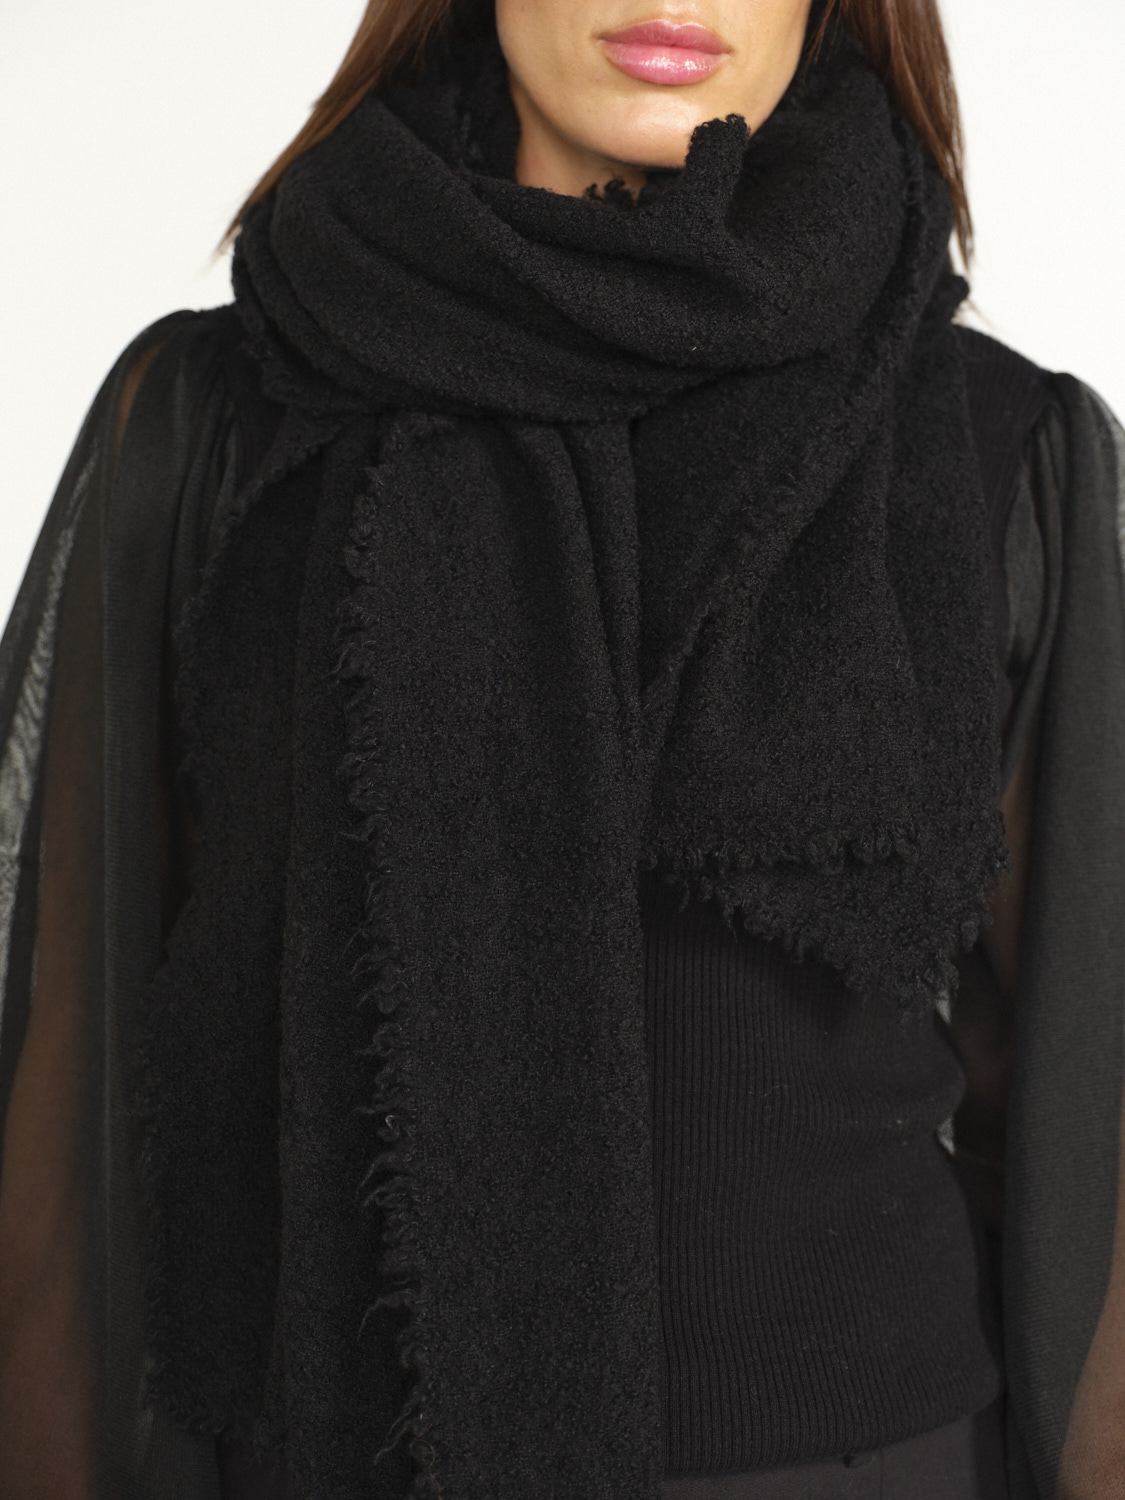 Faliero Sarti Alexia - Bufanda rectangular de lana y cachemira negro Talla única